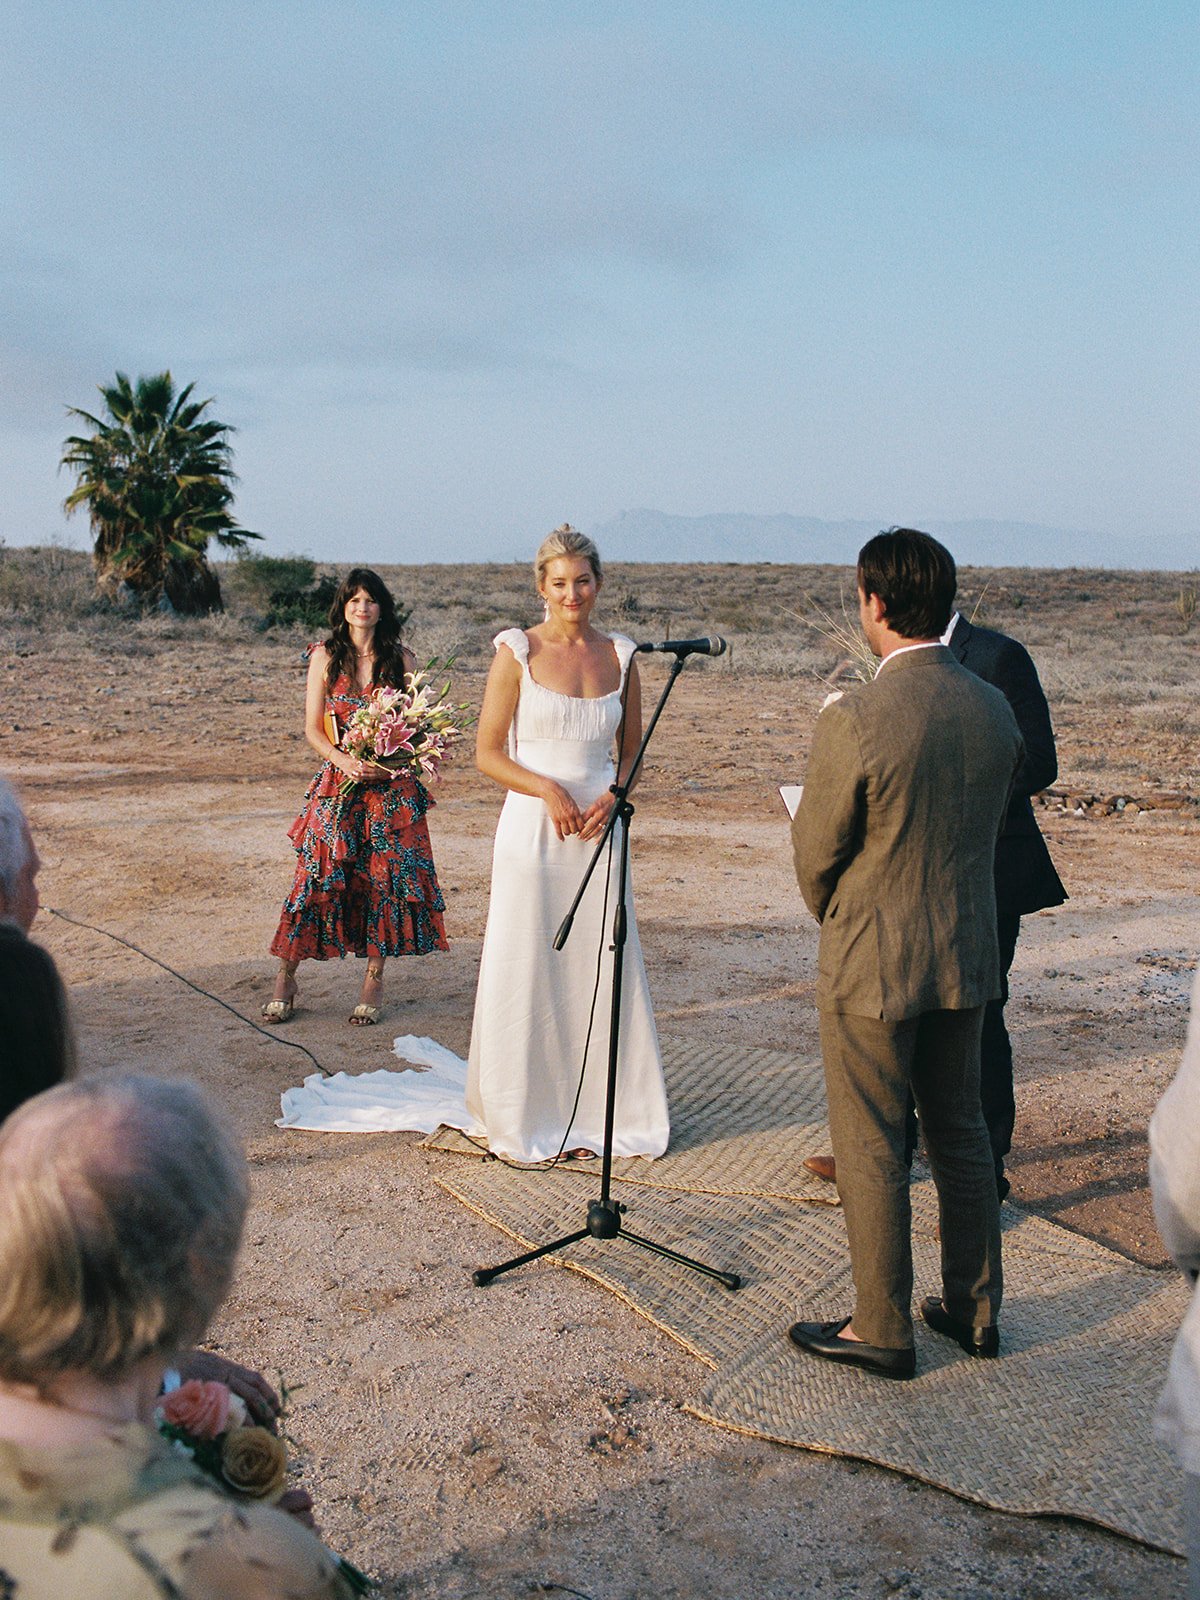 Best-Todos-Santos-Wedding-Photographer-Baja-El Mirador-La Bohemia-35mm-Film-Austin-Mexico-115.jpg